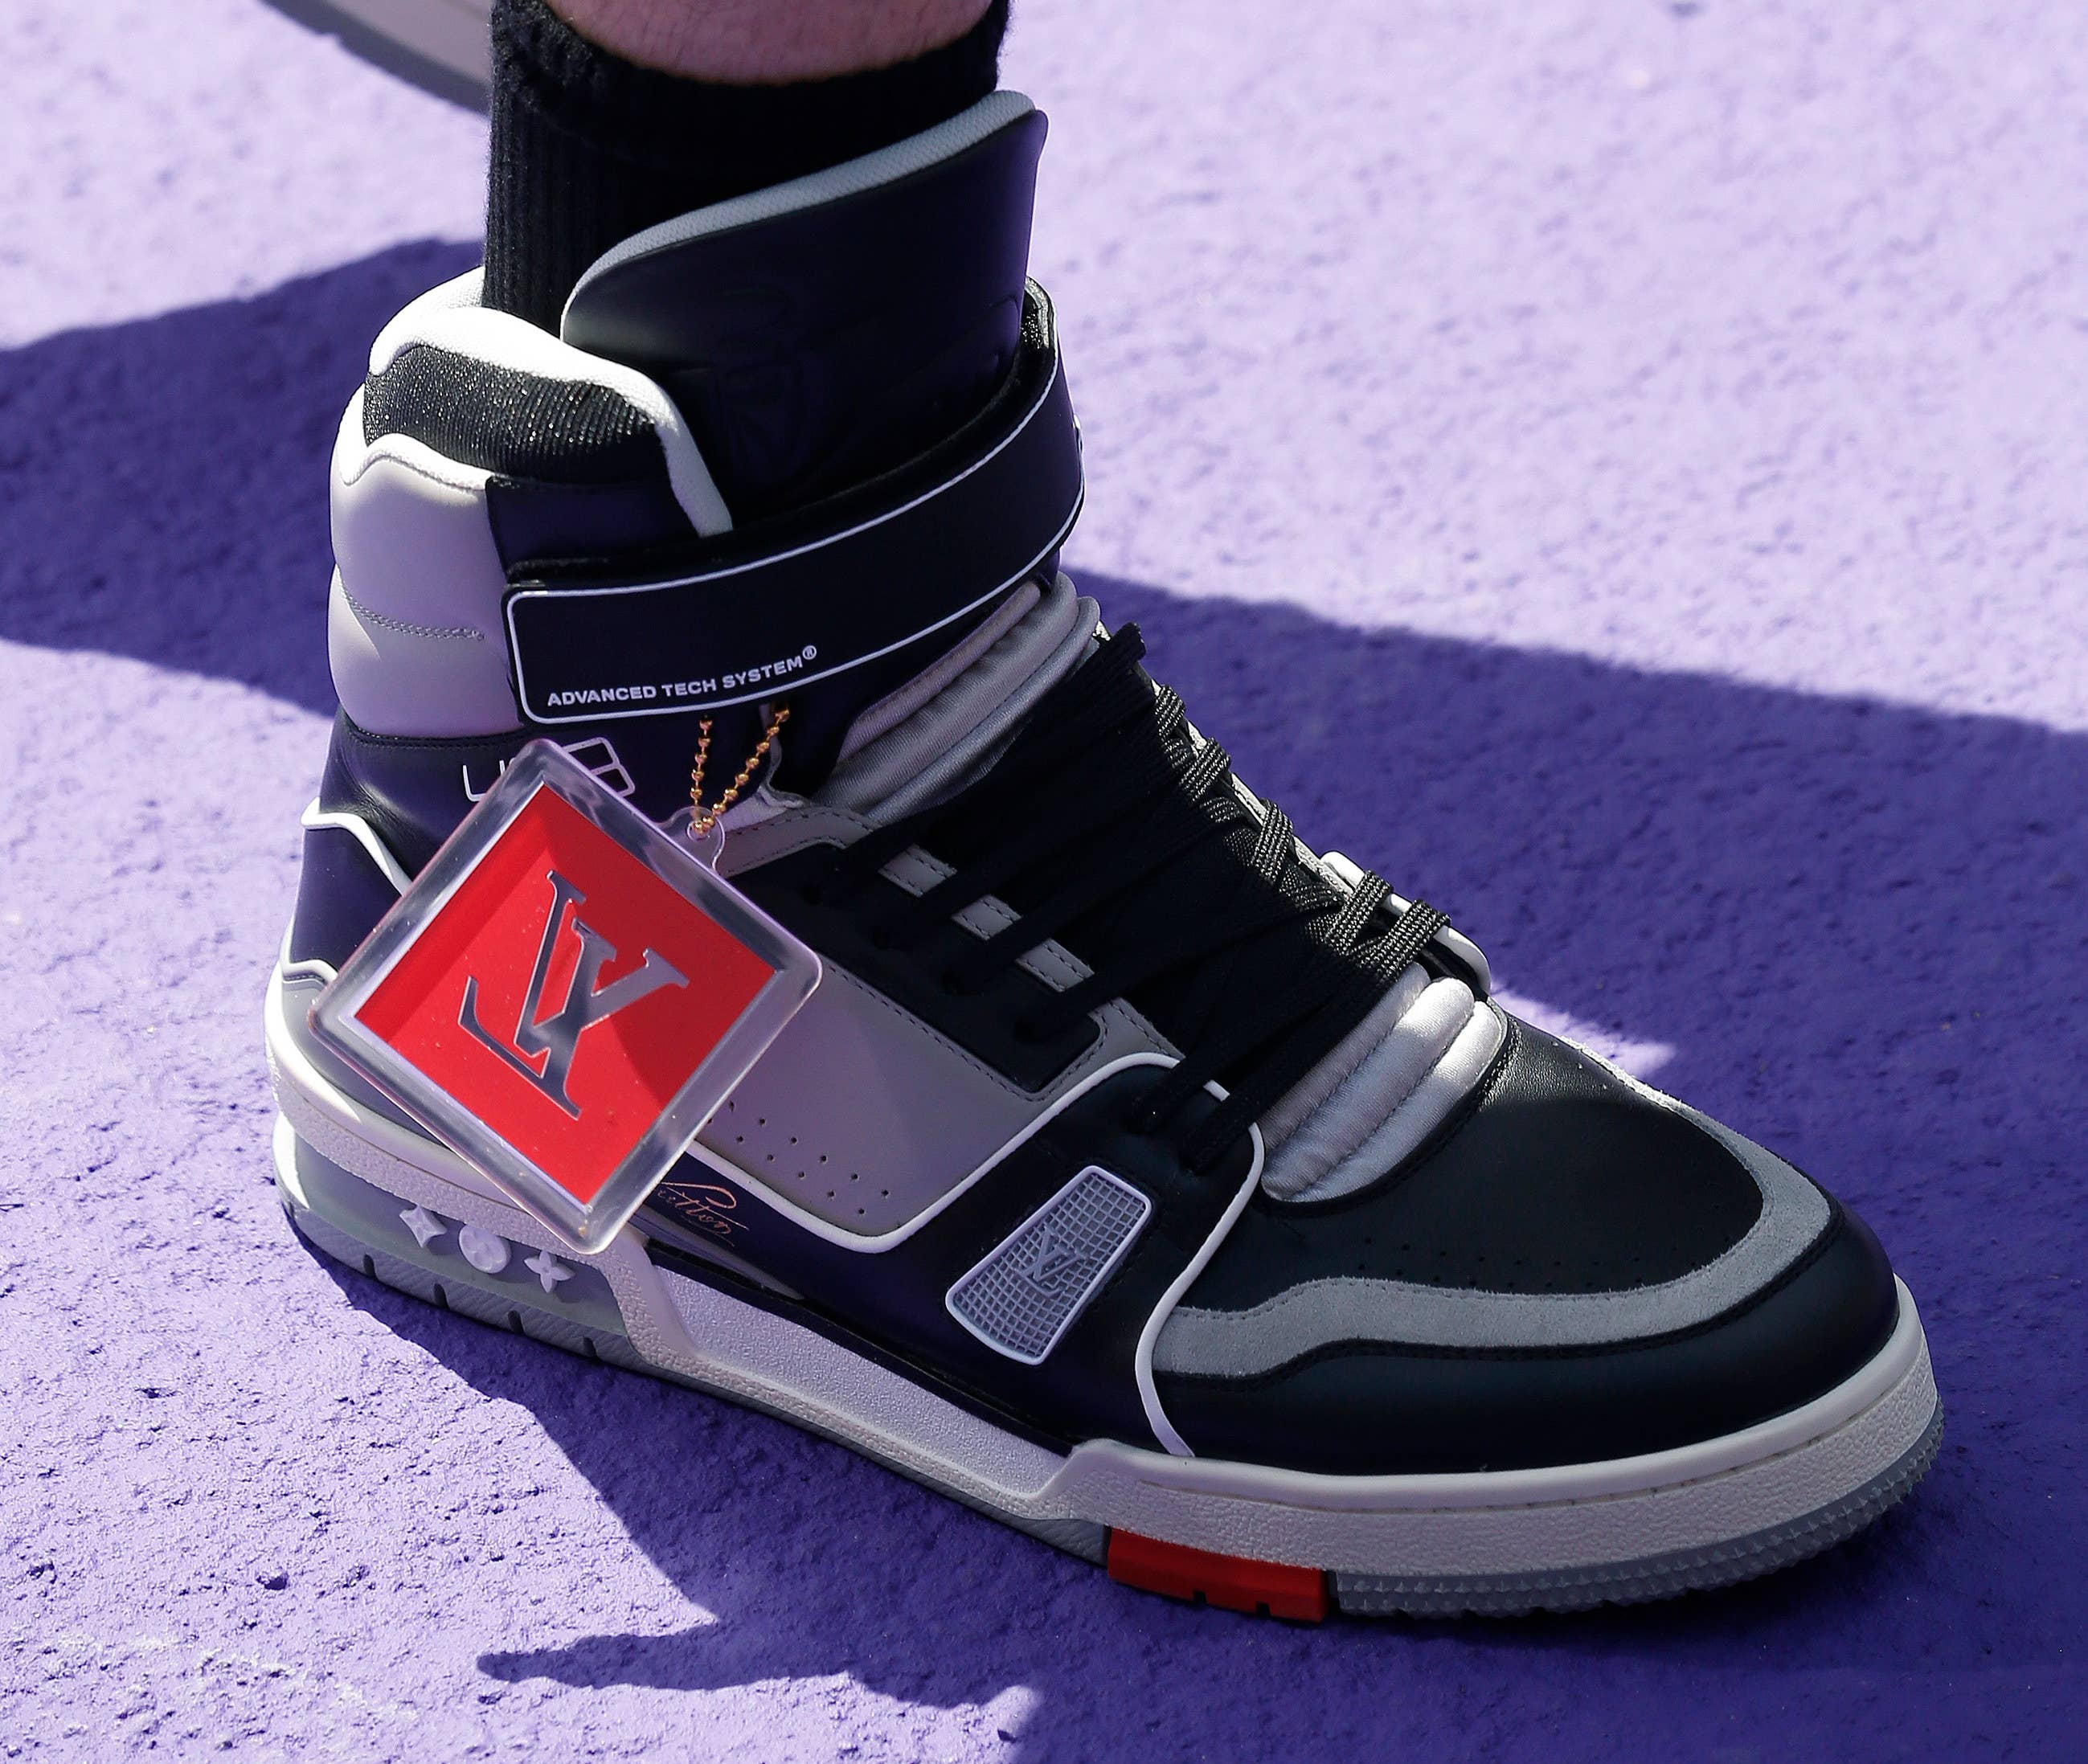 Best Look Yet at Virgil Abloh's Louis Vuitton Sneakers